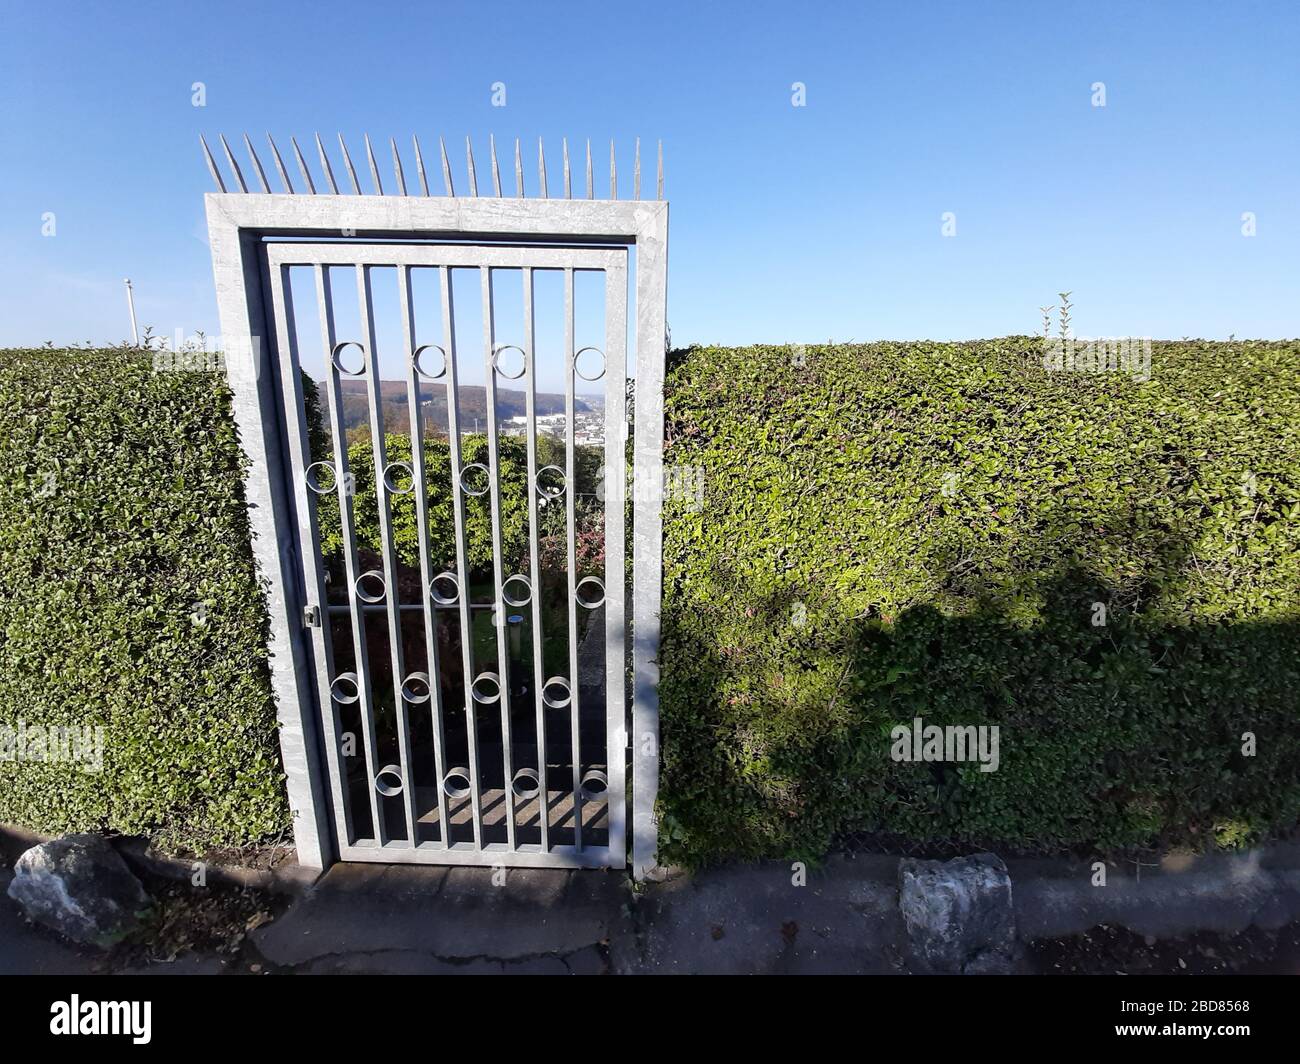 Allotment giardino - massiccio cancello d'acciaio con picchi contro l'ingresso non autorizzato, Germania Foto Stock